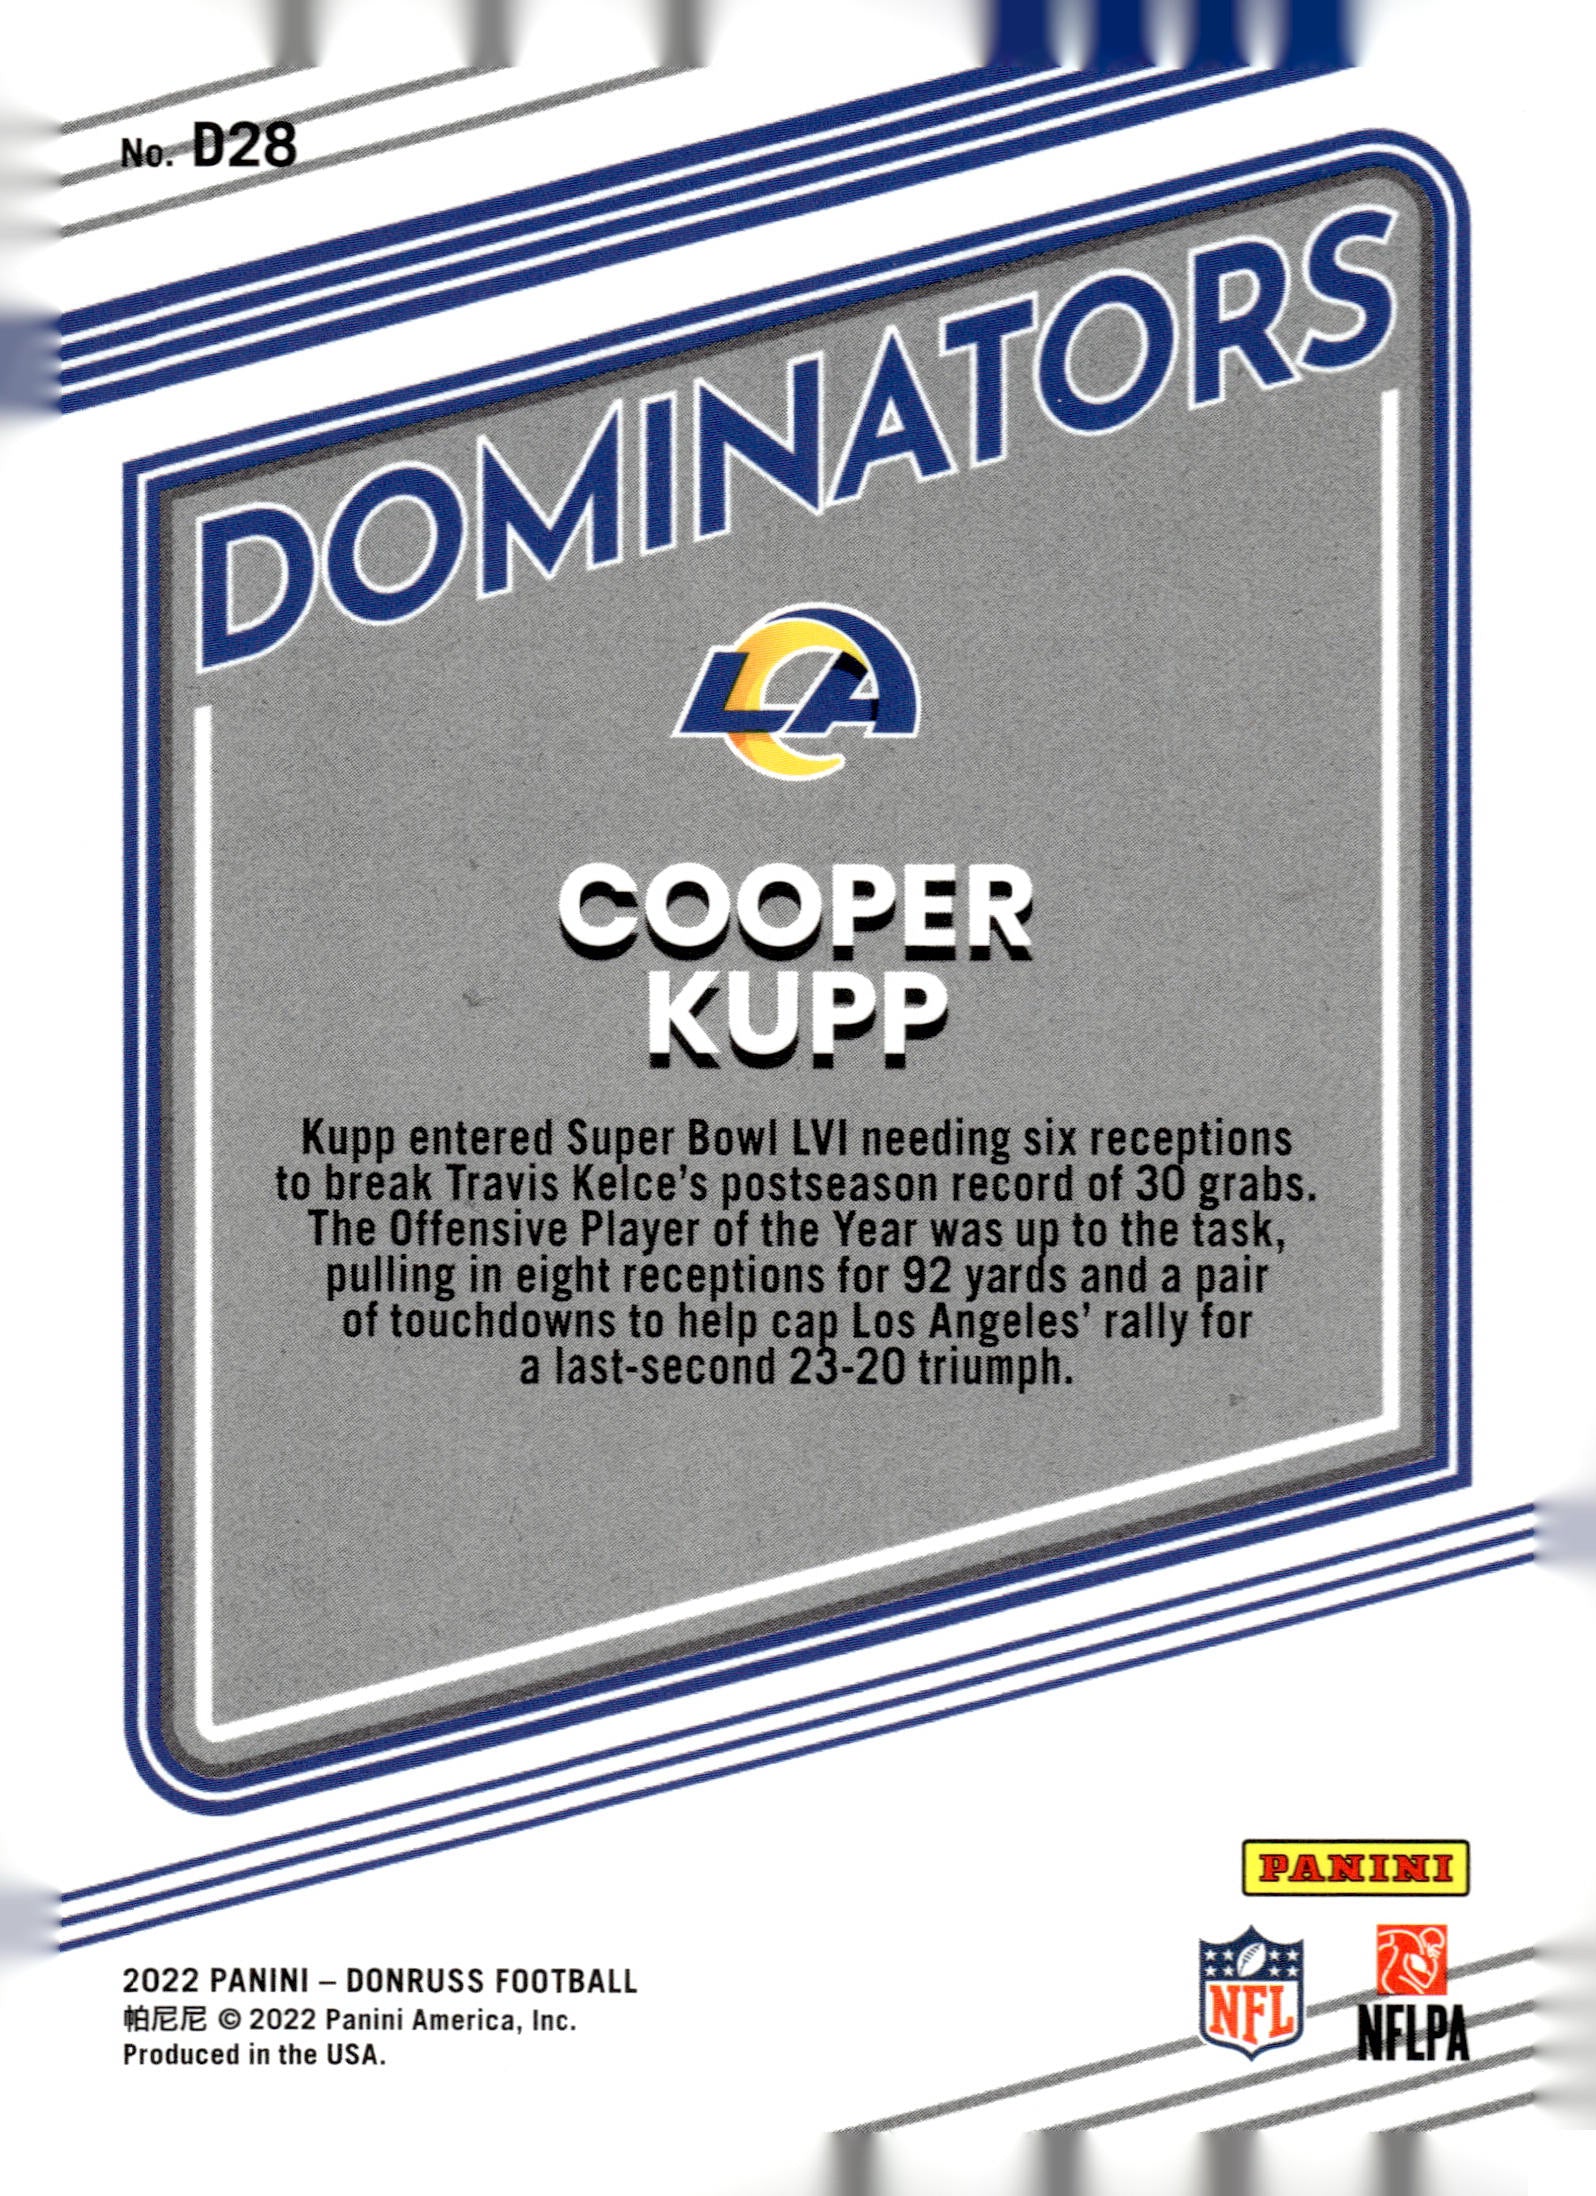 2022 Donruss #D28 Cooper Kupp Dominators